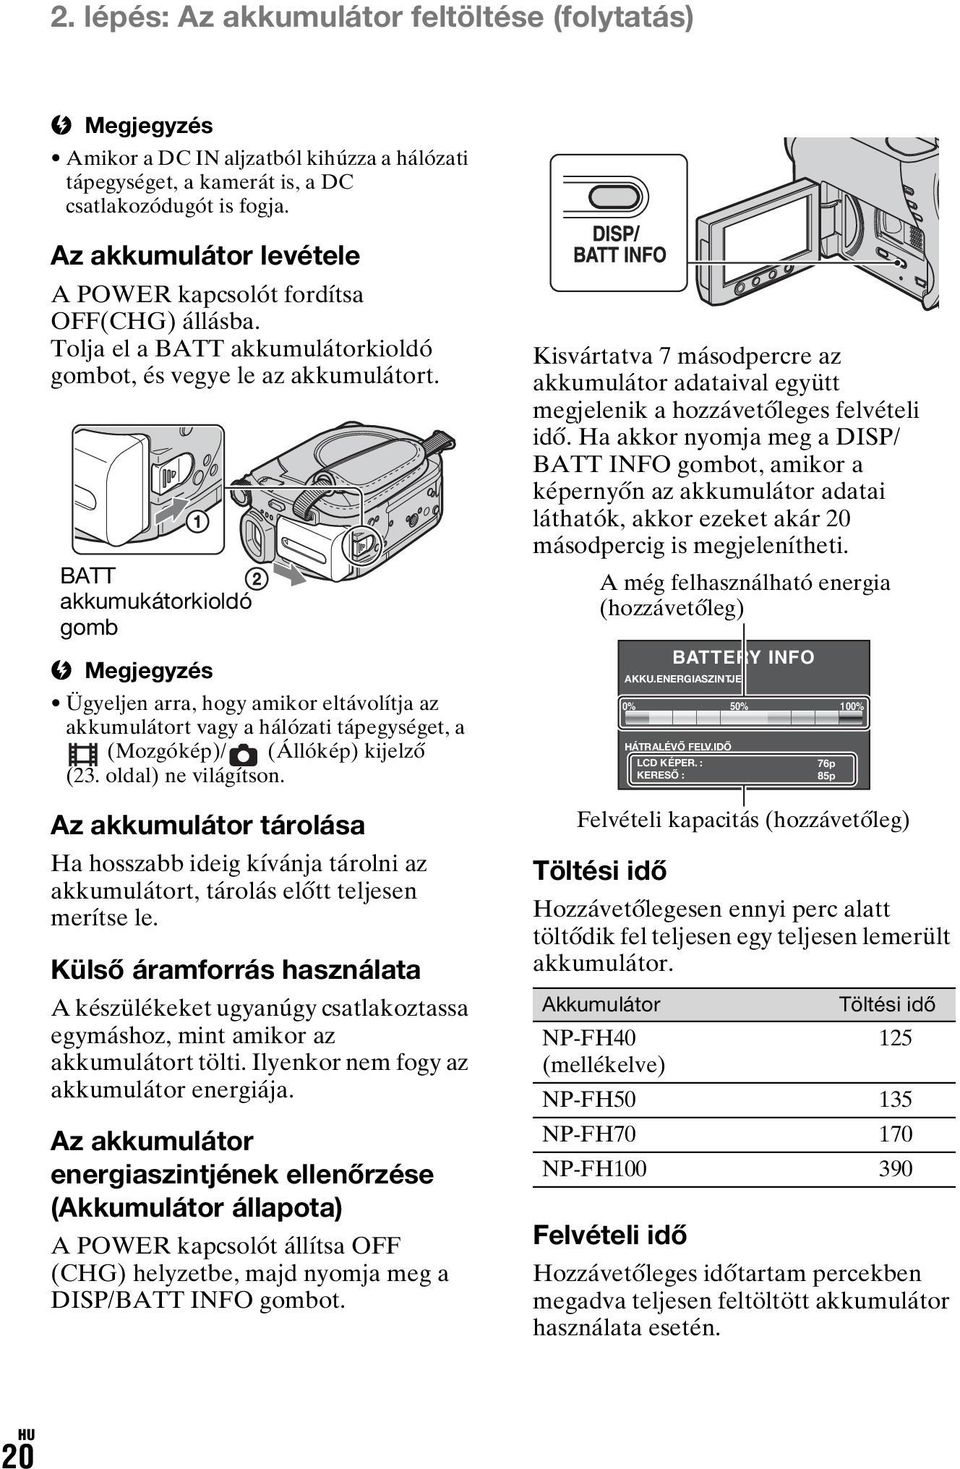 BATT akkumukátorkioldó gomb b Megjegyzés Ügyeljen arra, hogy amikor eltávolítja az akkumulátort vagy a hálózati tápegységet, a (Mozgókép)/ (Állókép) kijelző (23. oldal) ne világítson.